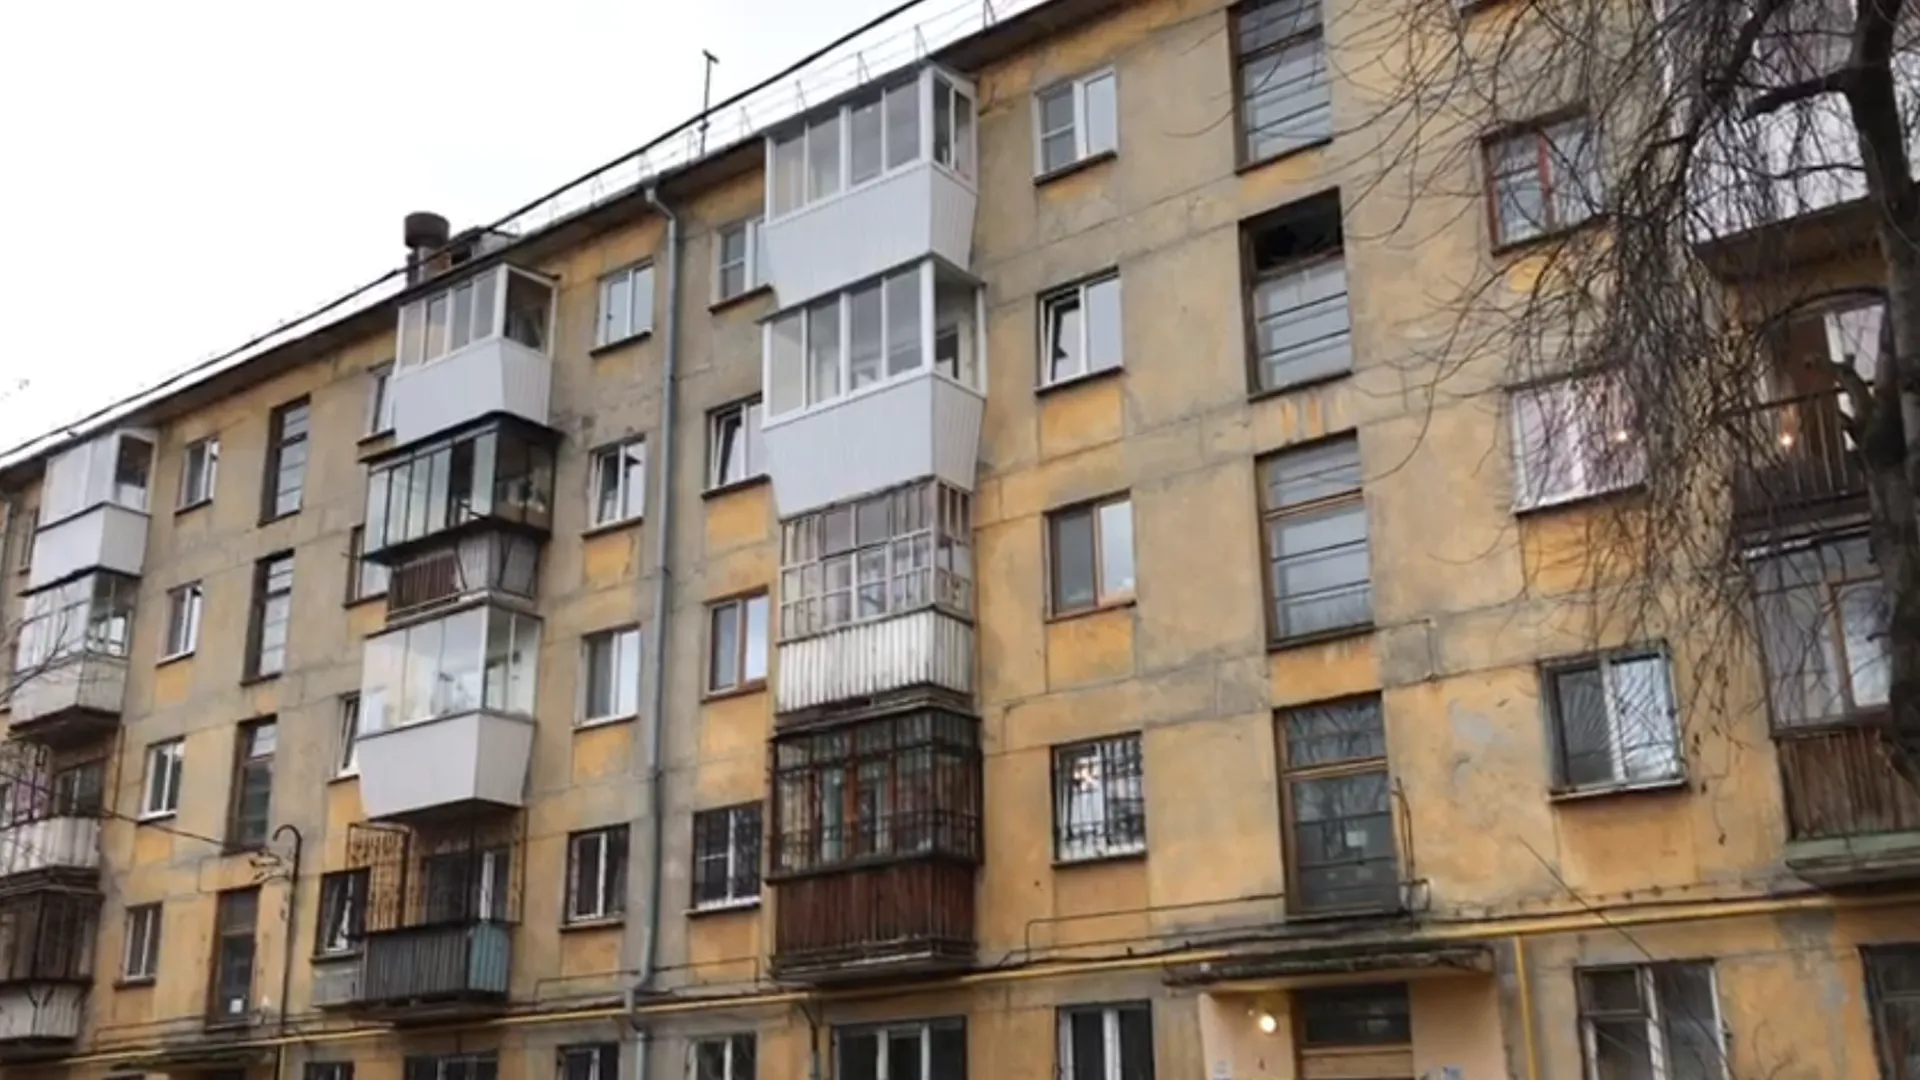 Появилось видео с места убийства 4 человек на вечеринке в Екатеринбурге